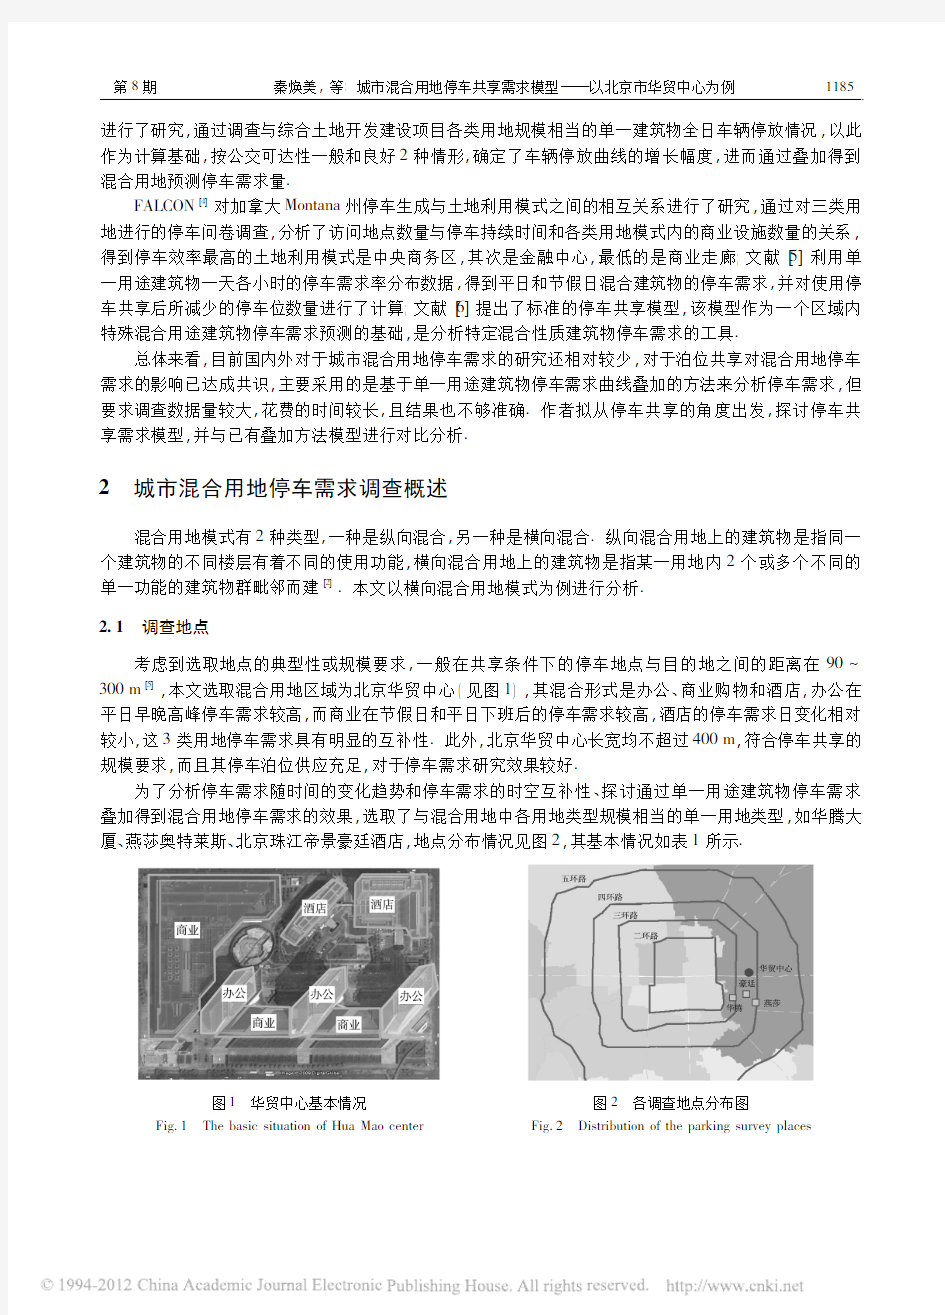 城市混合用地停车共享需求模型_以北京市华贸中心为例